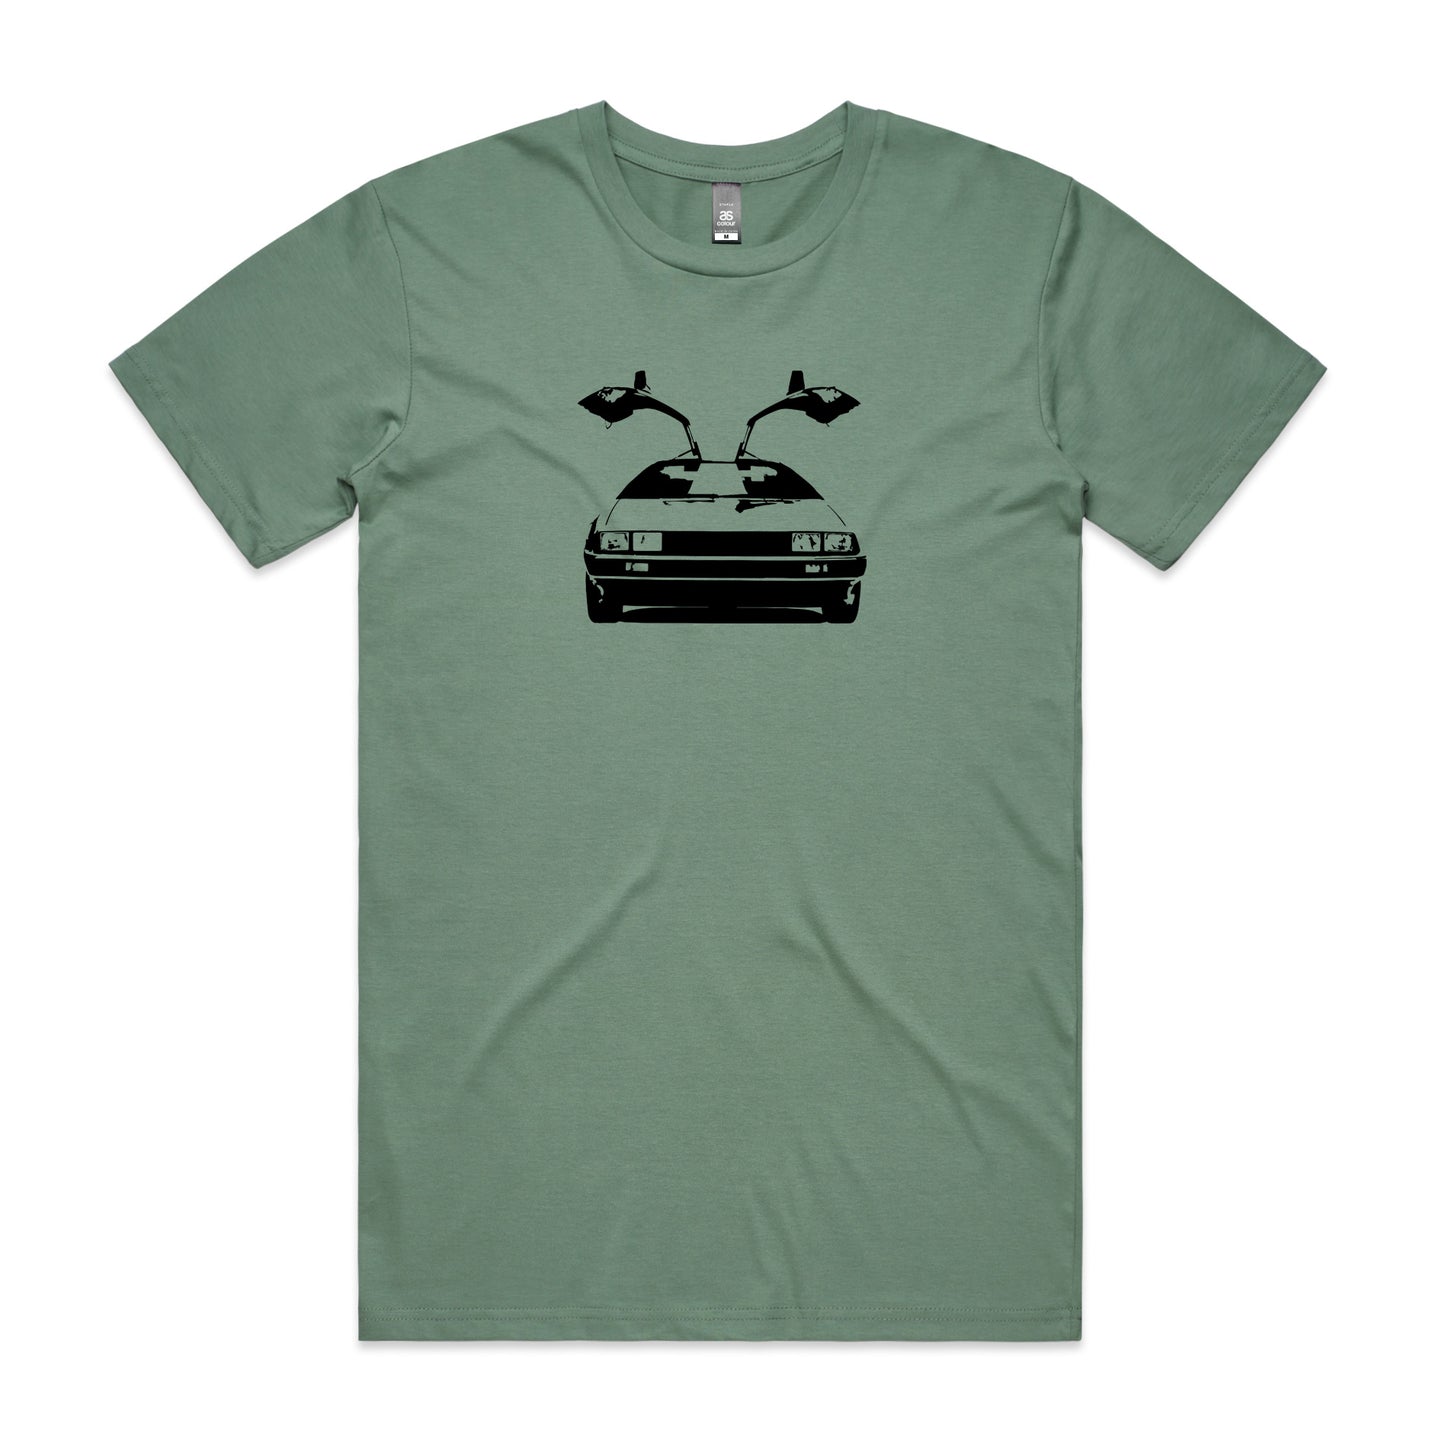 DeLorean DMC-12 T-Shirt